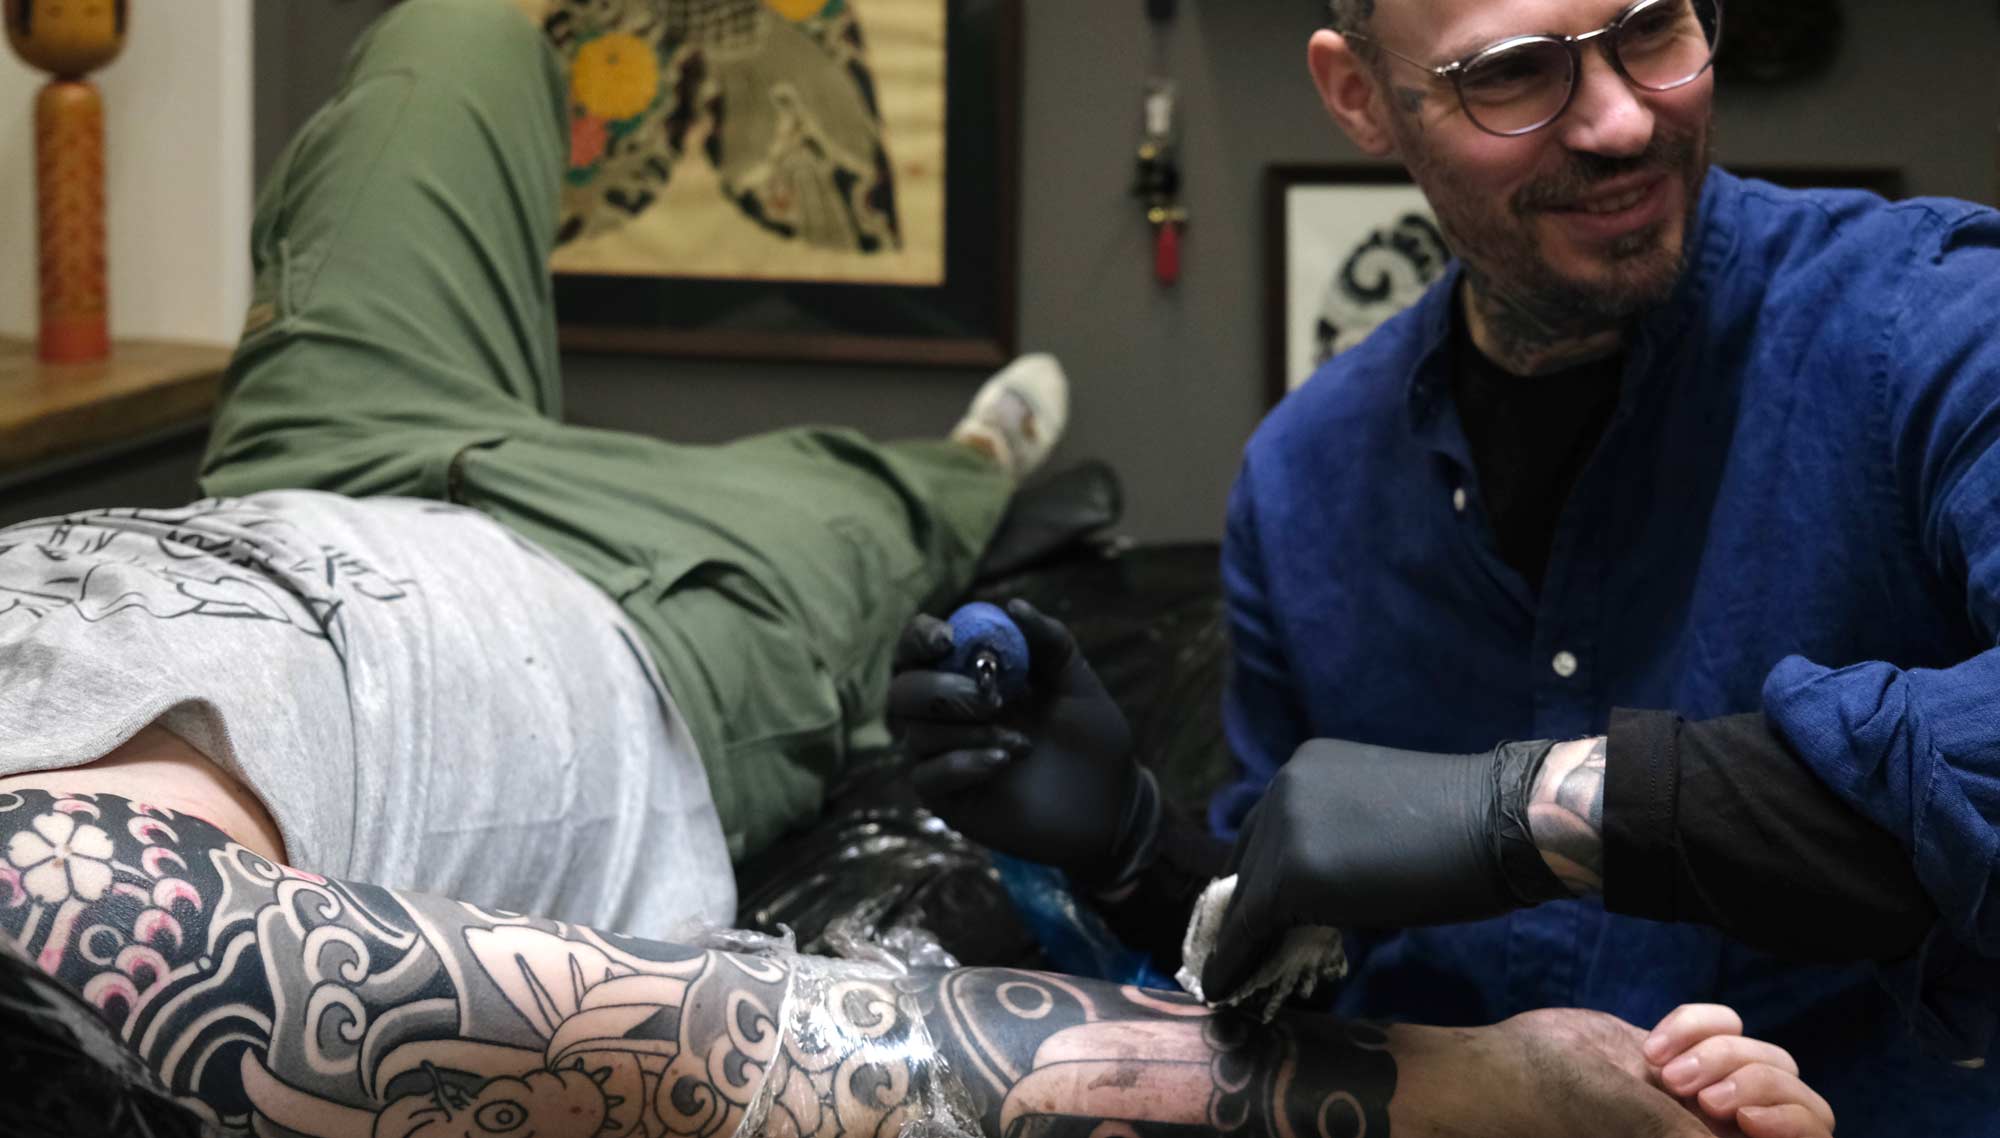 Swen Losinsky, Eigentümer von Good Old Times Tattoo Berlin, tätowiert japanische Tattoos, Koi mit Wasser auf einem Arm, worüber er sich sehr freut.